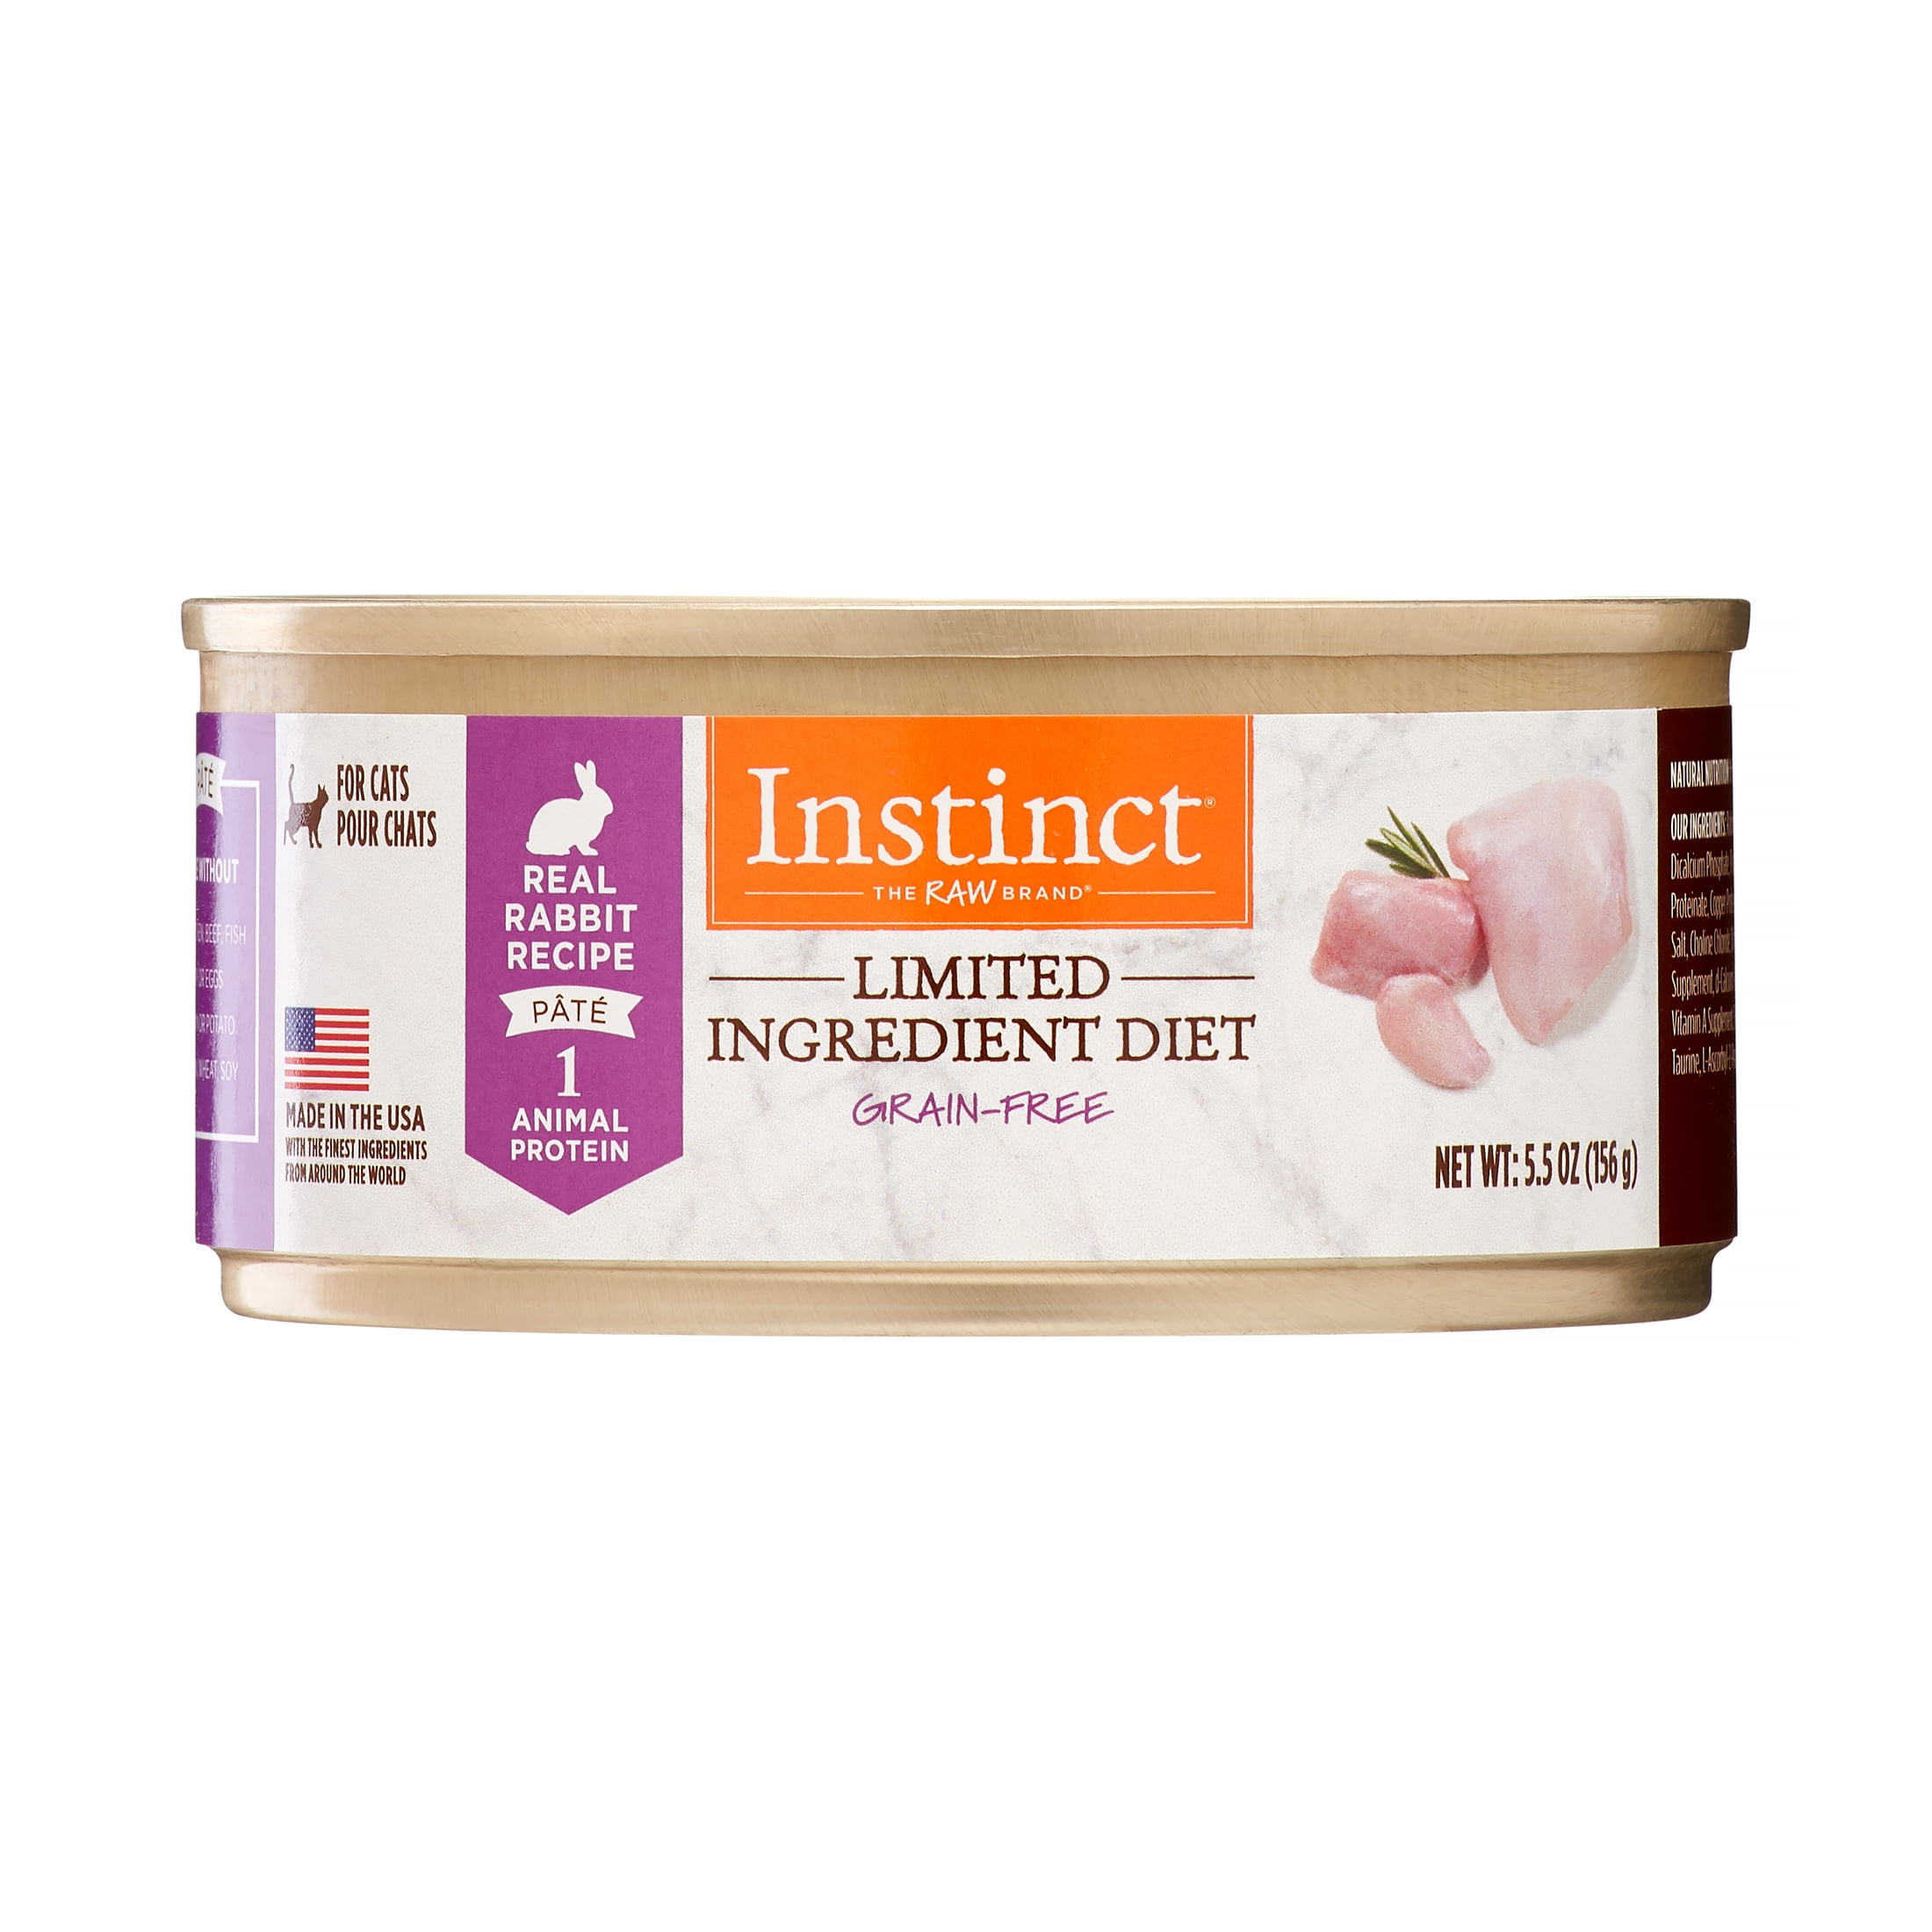 (Case of 12) Instinct Limited Ingredient Diet GrainFree Real Rabbit